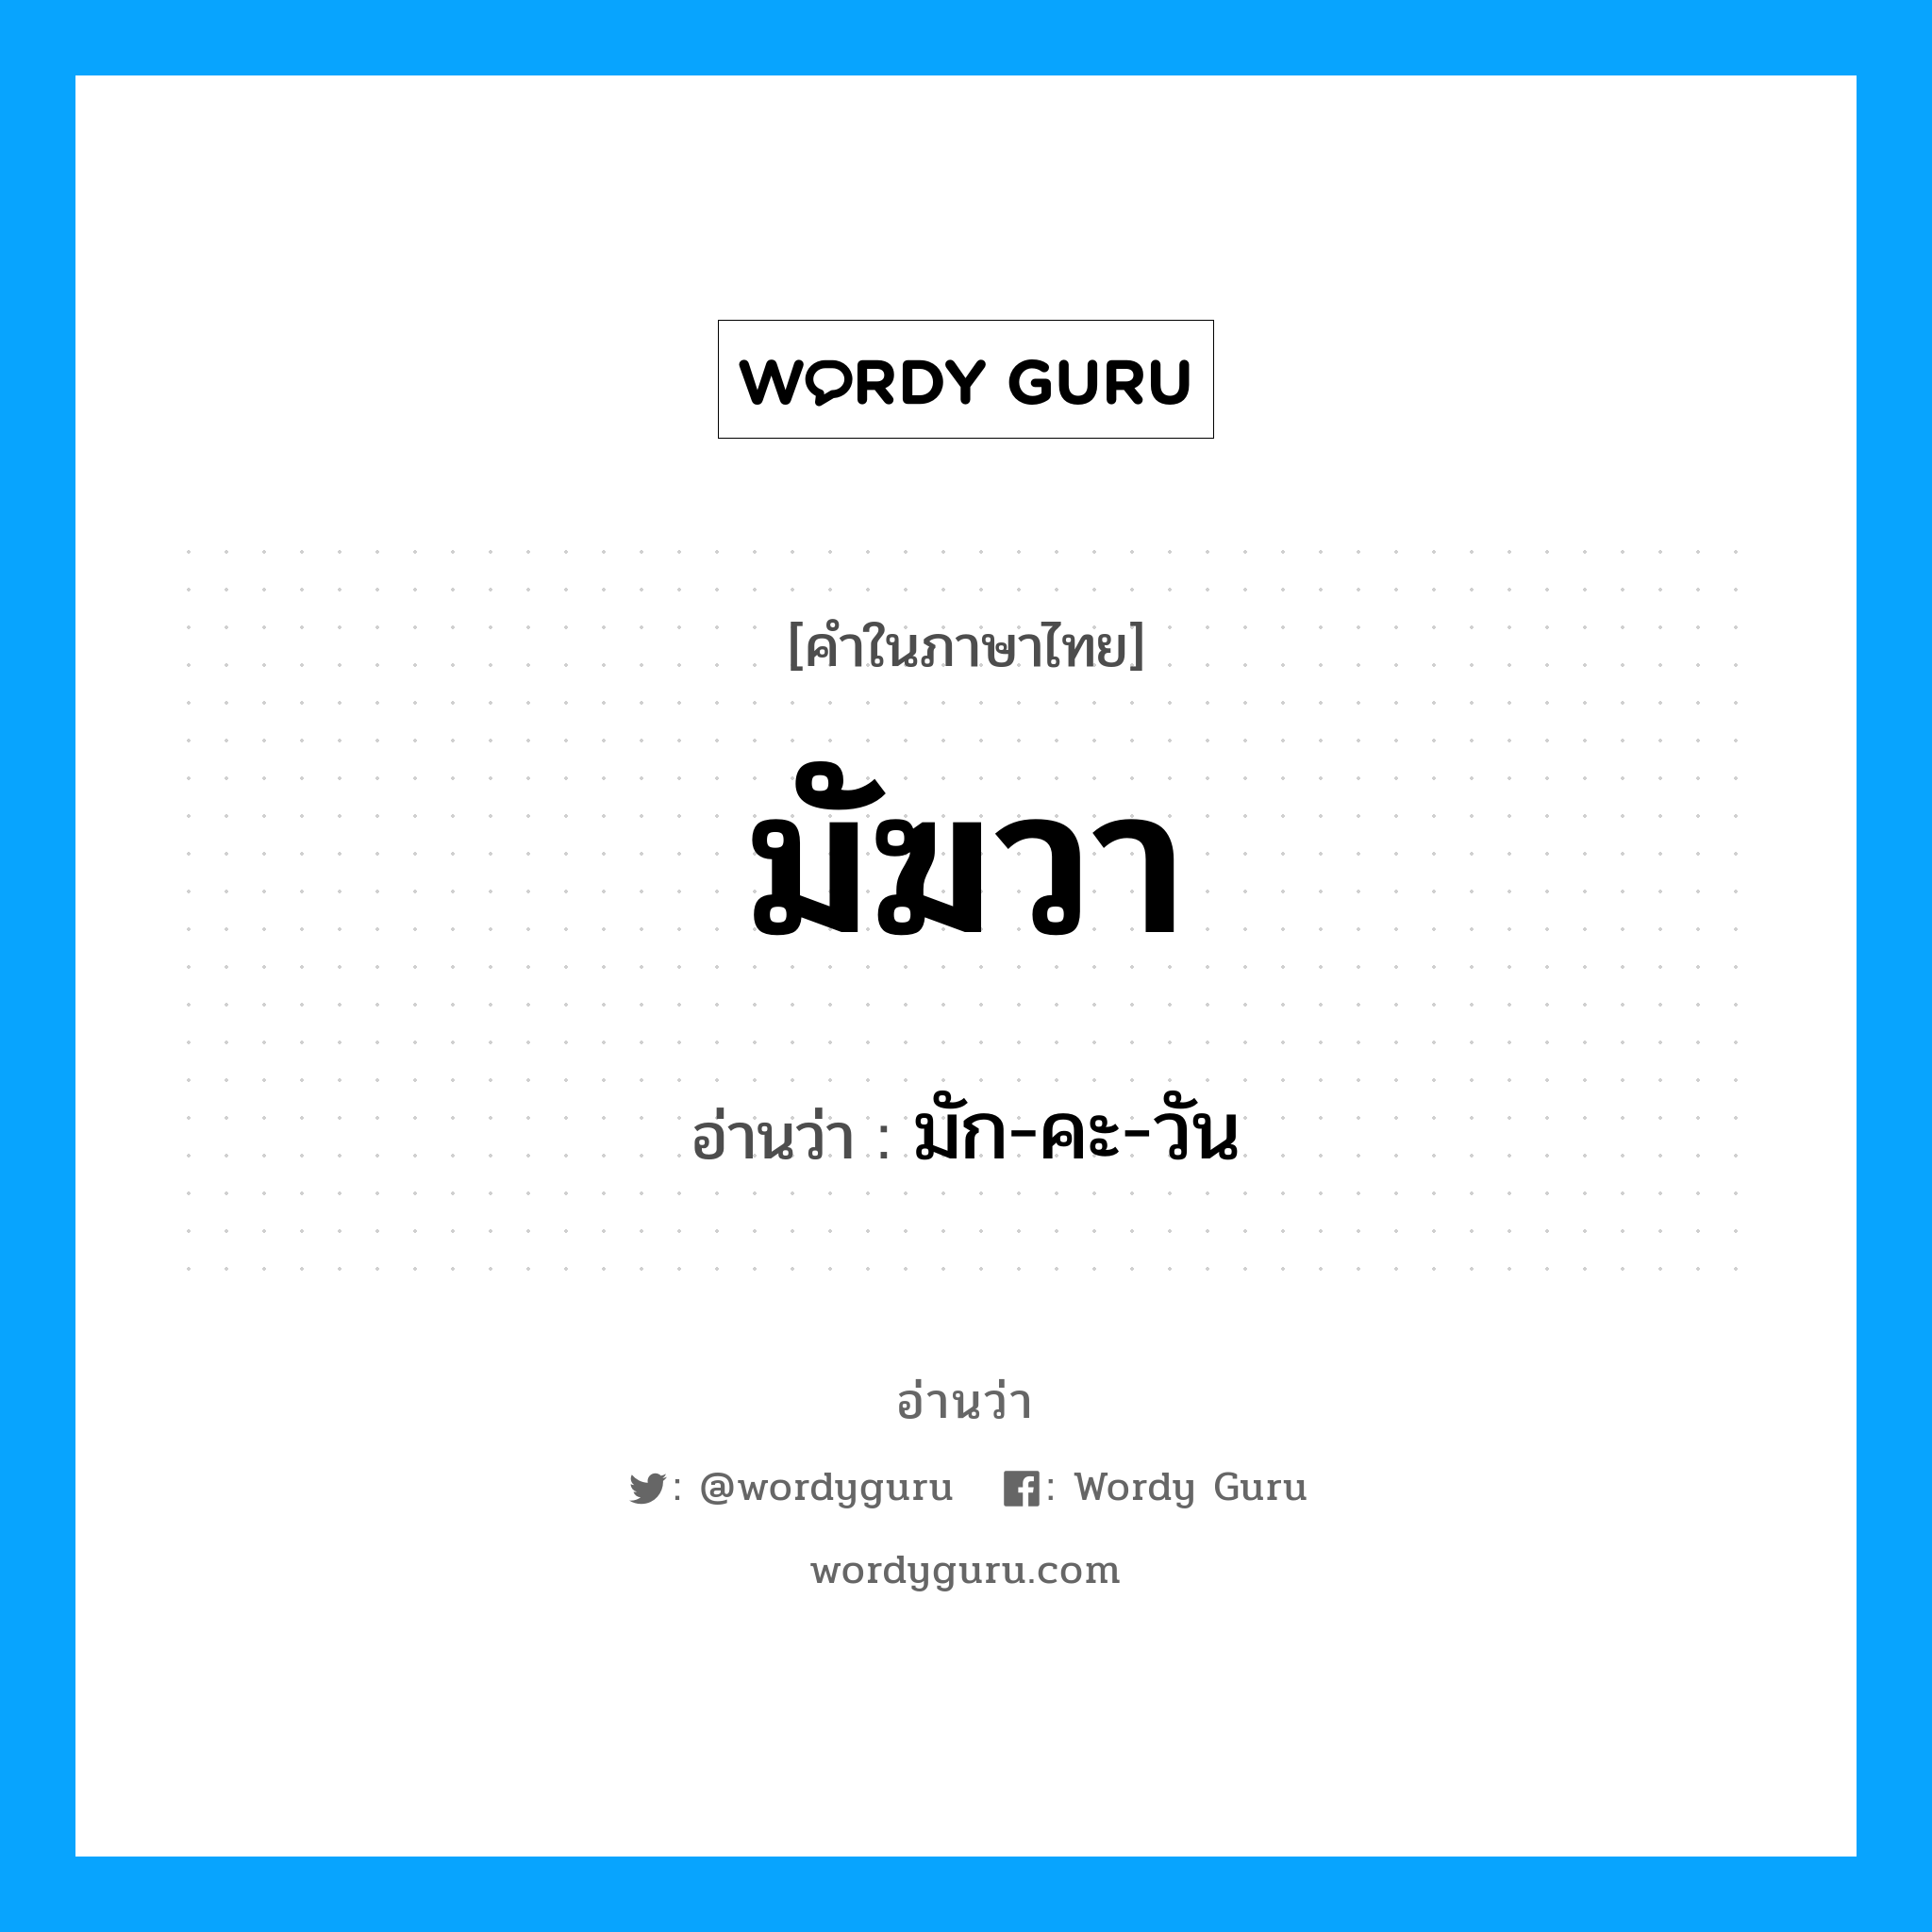 มัก-คะ-วัน เป็นคำอ่านของคำไหน?, คำในภาษาไทย มัก-คะ-วัน อ่านว่า มัฆวา